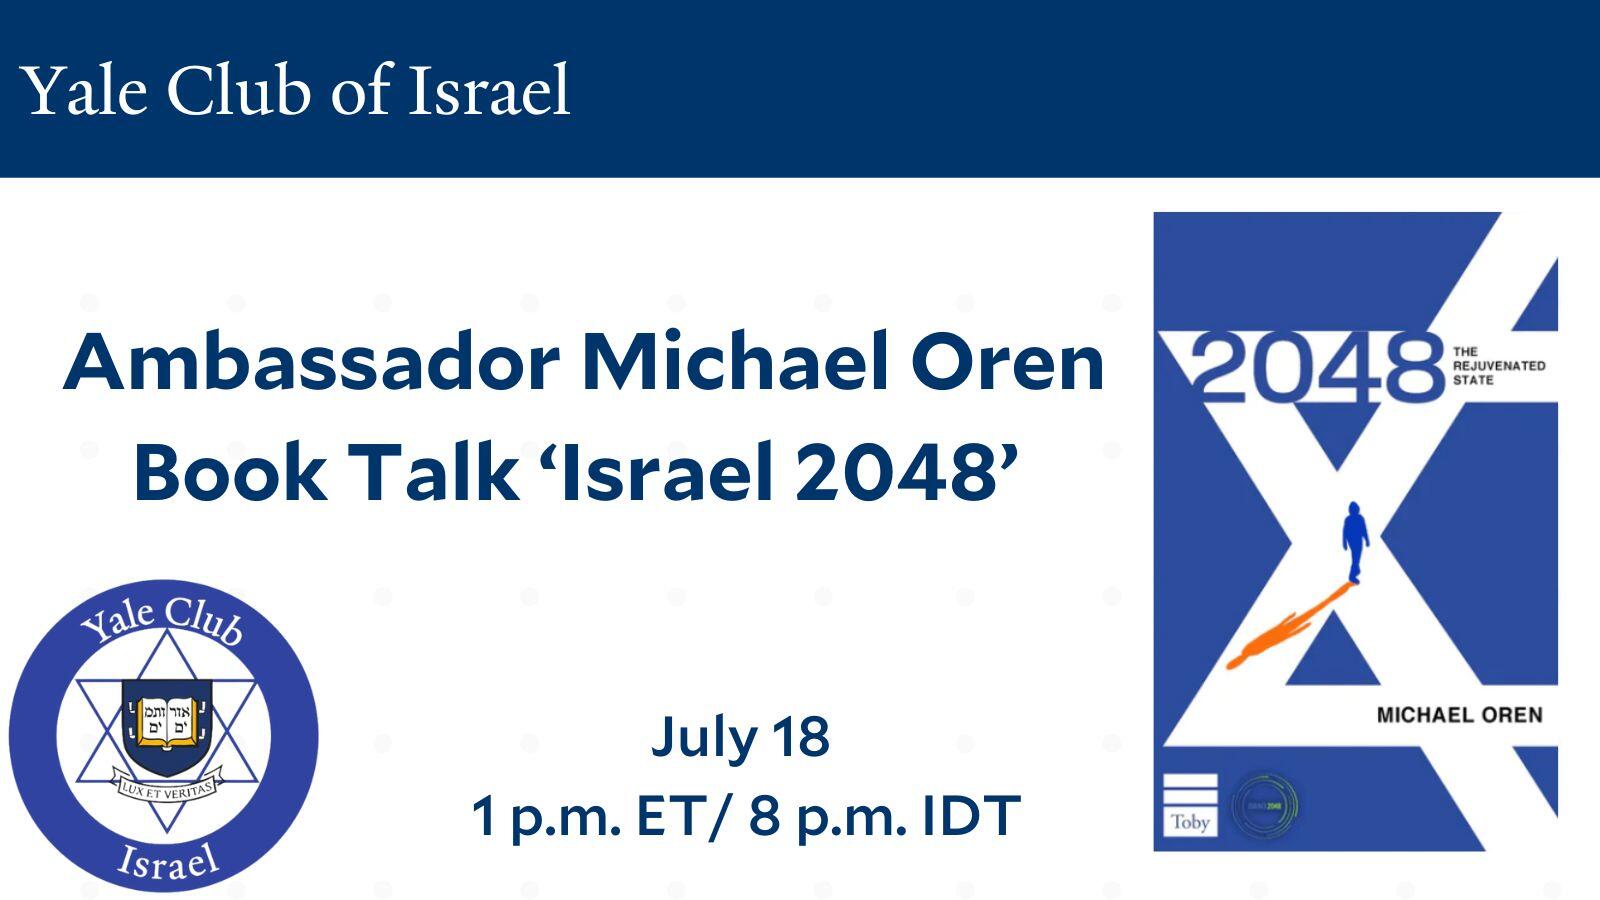 Yale Club of Israel Book Talk 2048